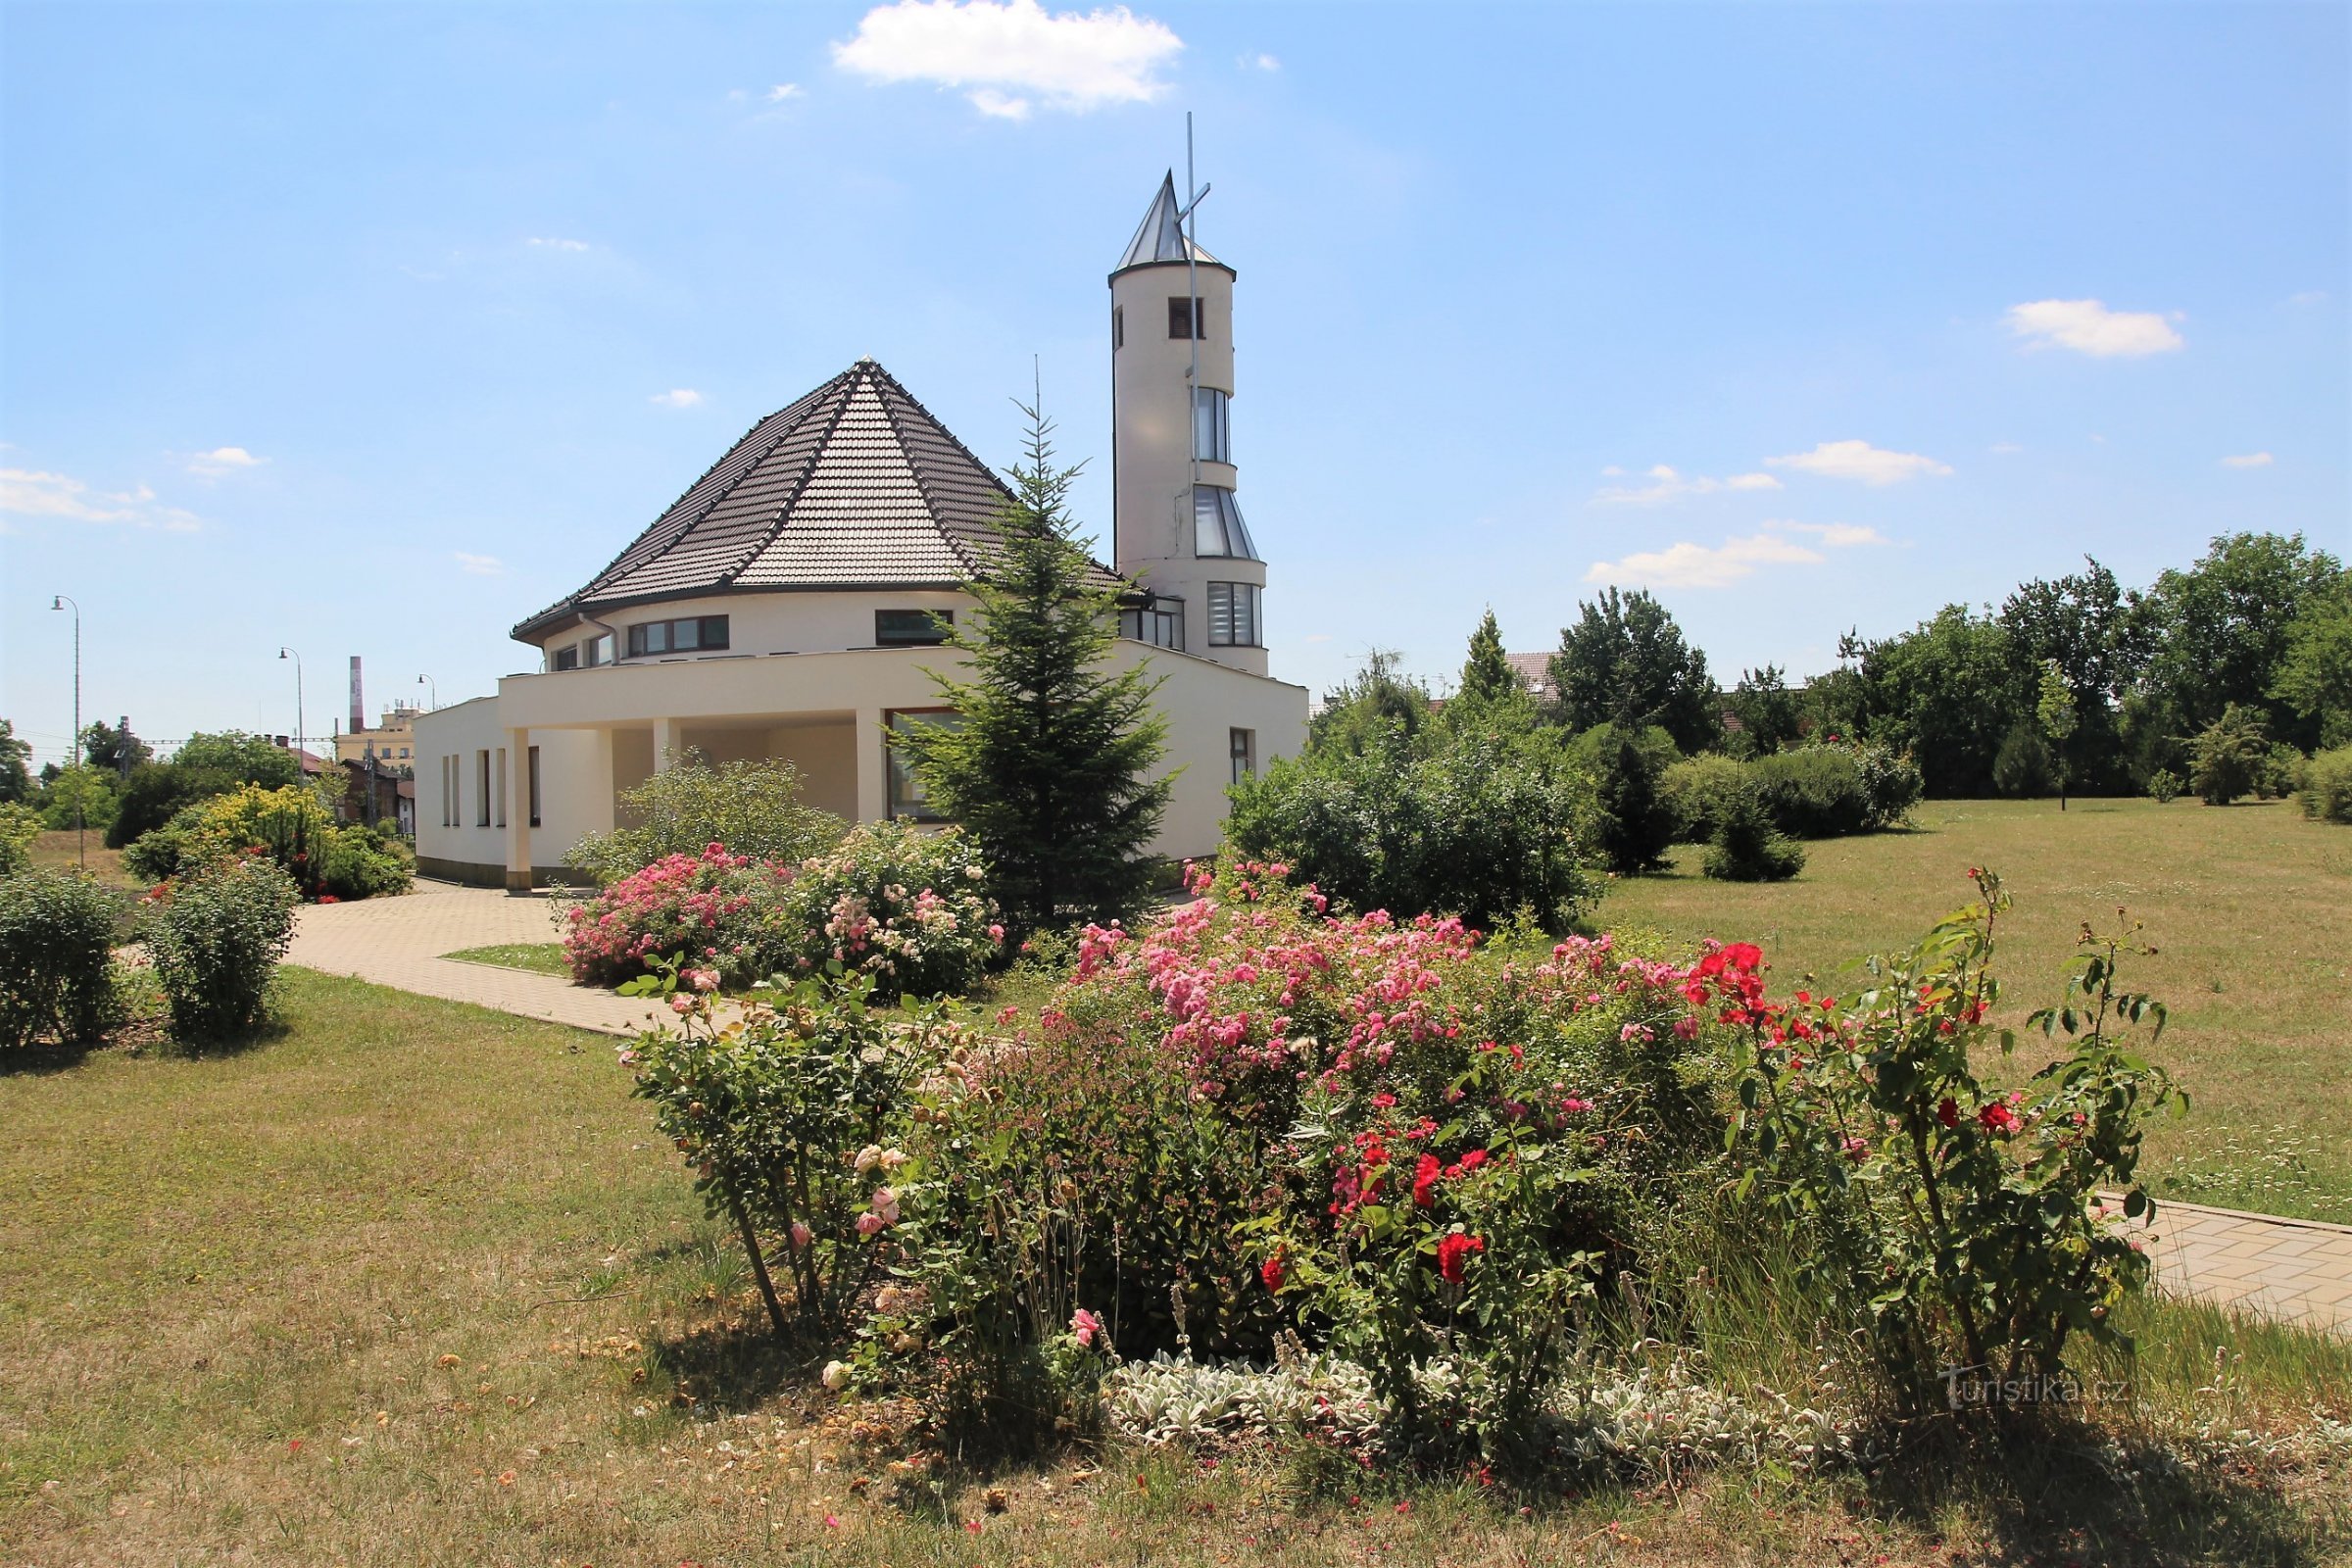 Hrušovany perto de Brno - a igreja da Virgem Maria Rainha